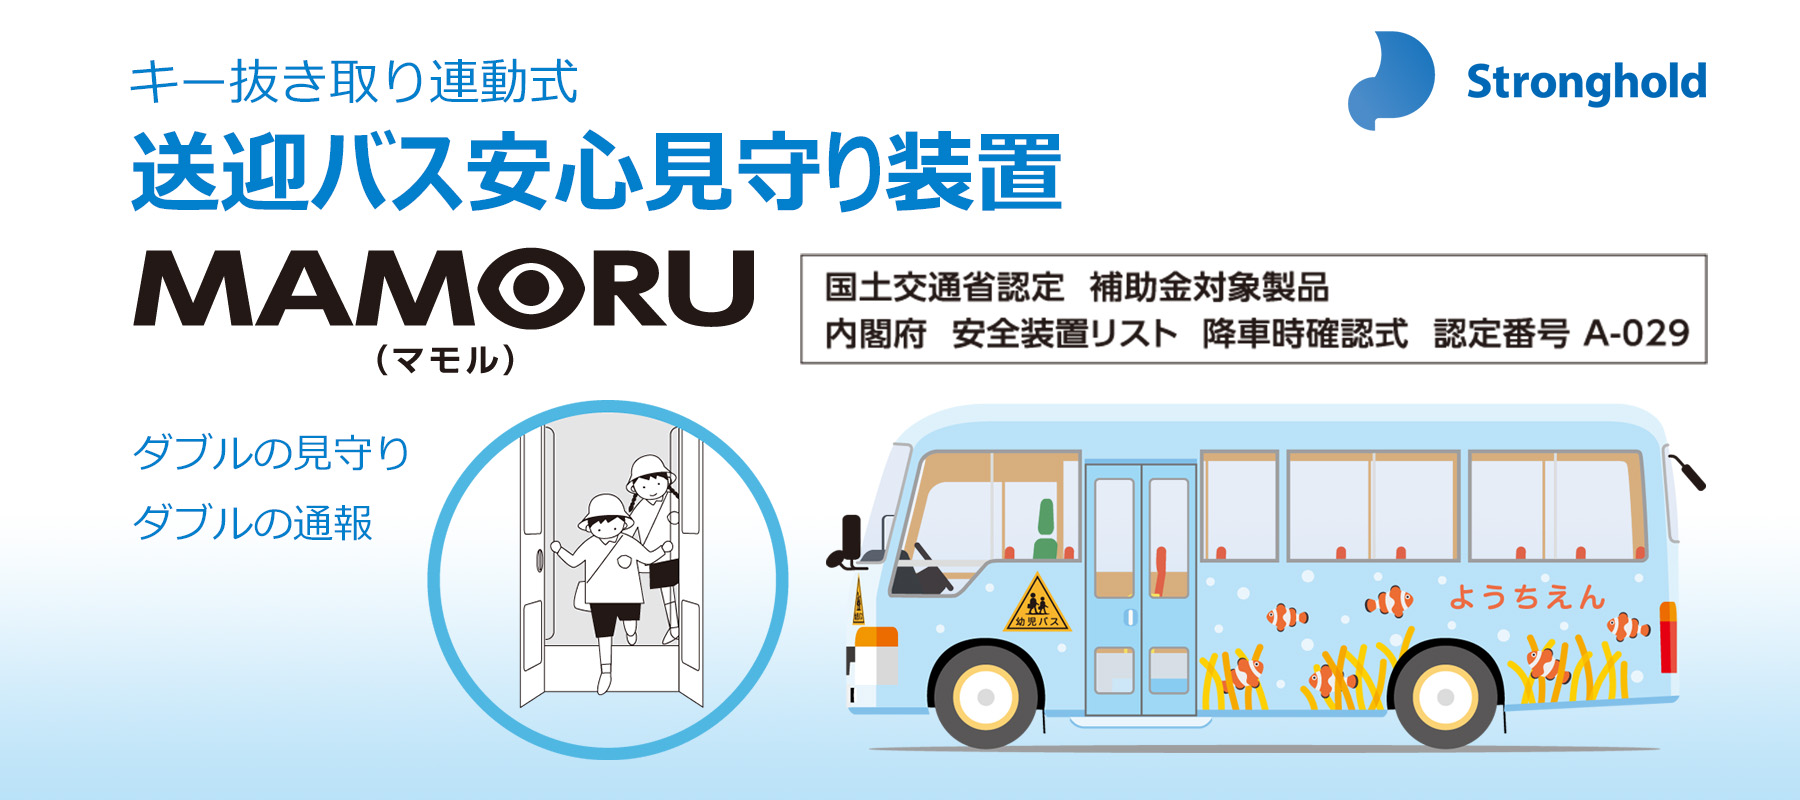 キー抜き取り連動式 送迎バス安心見守り装置「MAMORU」